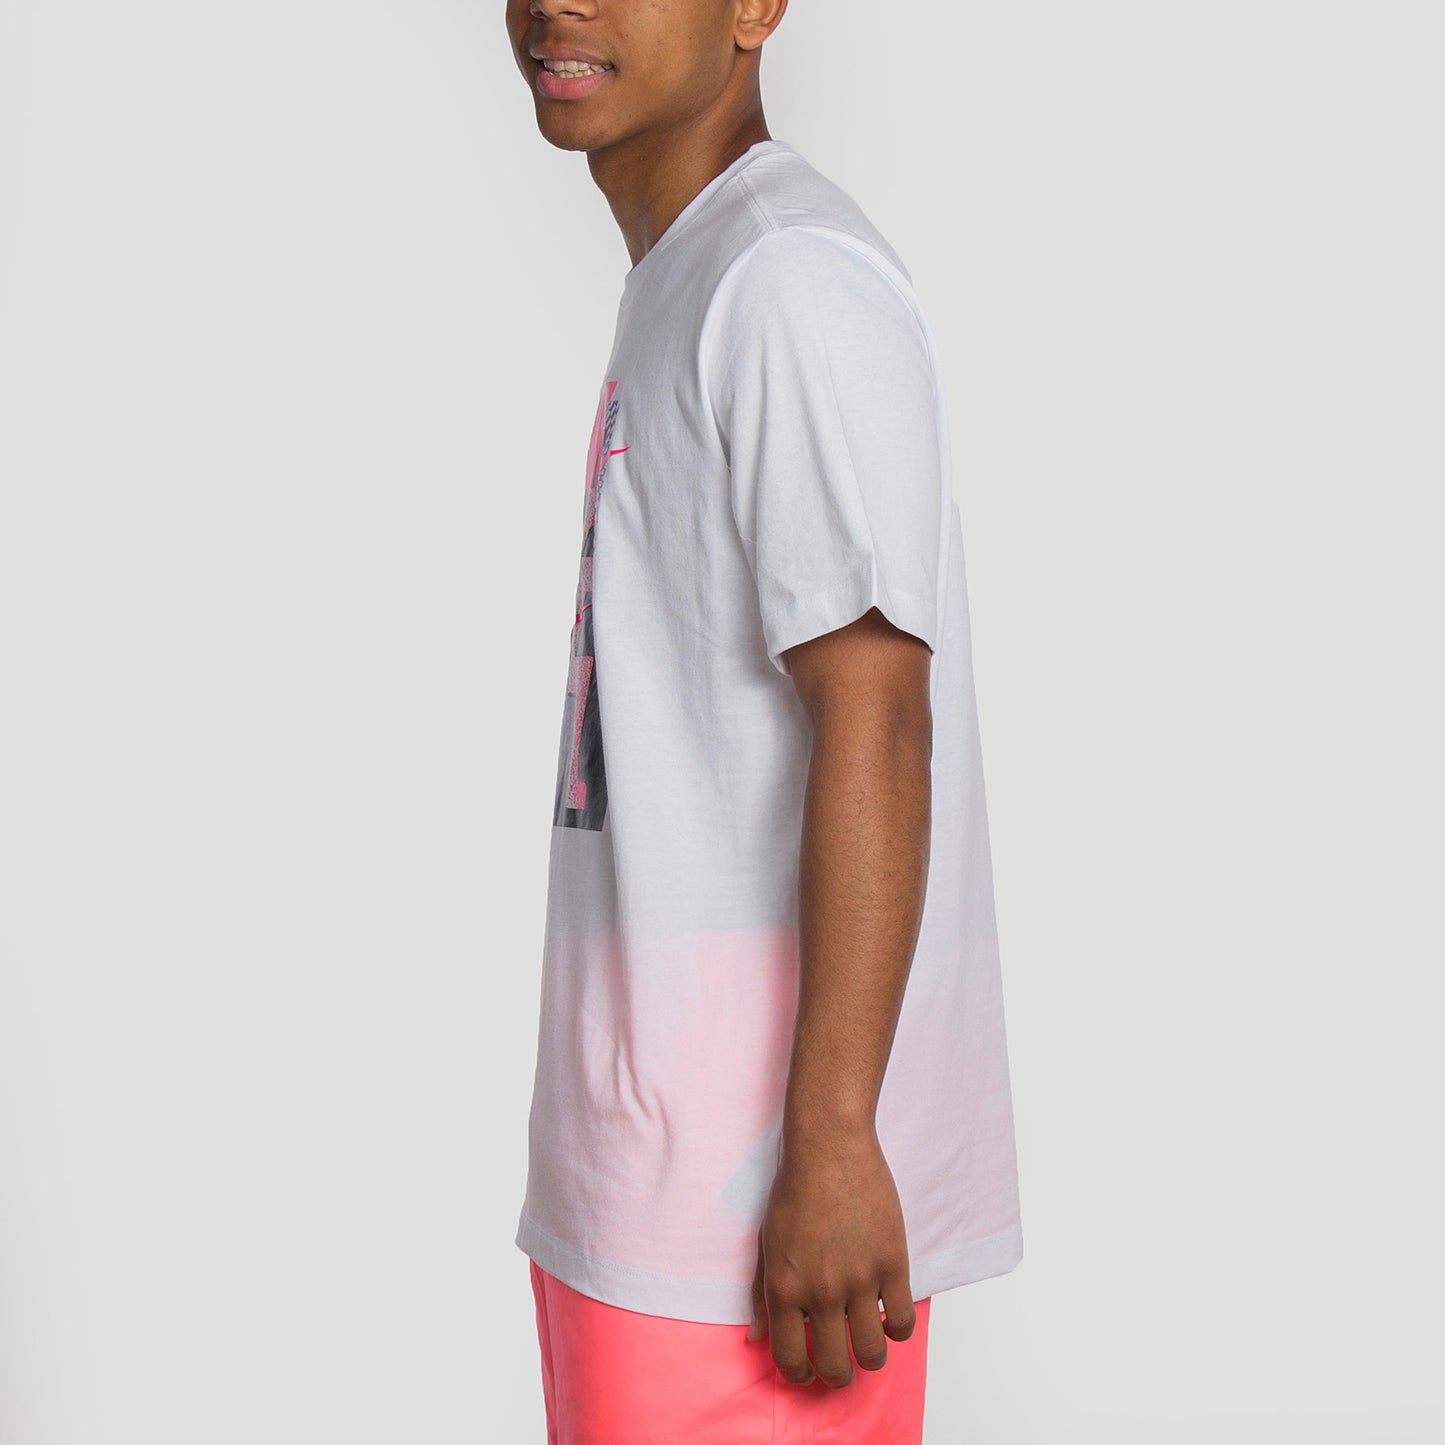  Camiseta Nike de manga corta y cuello redondo. Con un fit regular y fabricada en suave algodón 100.